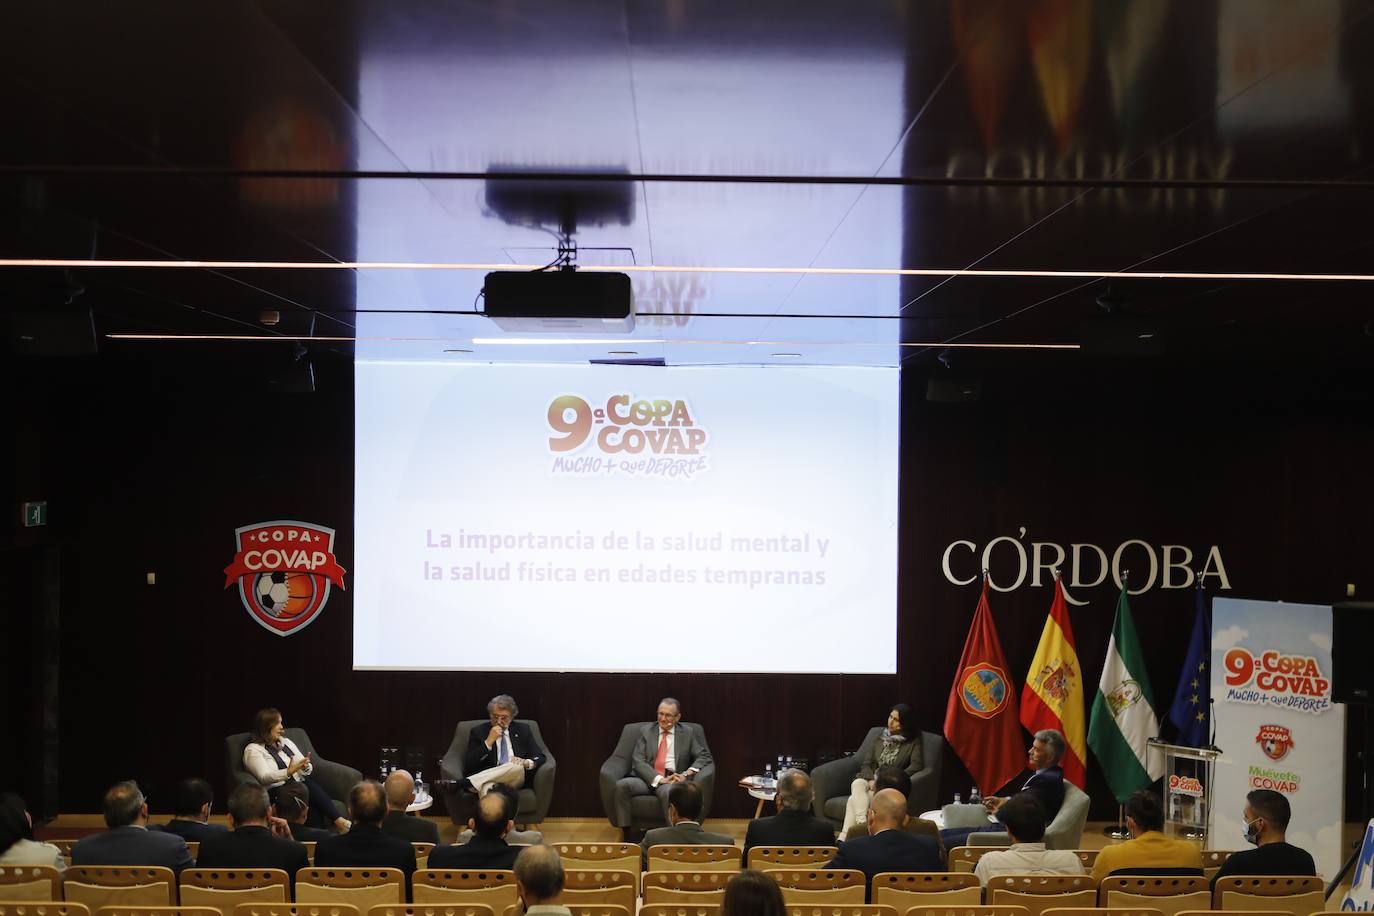 La presentación de la Copa Covap en Córdoba, en imágenes